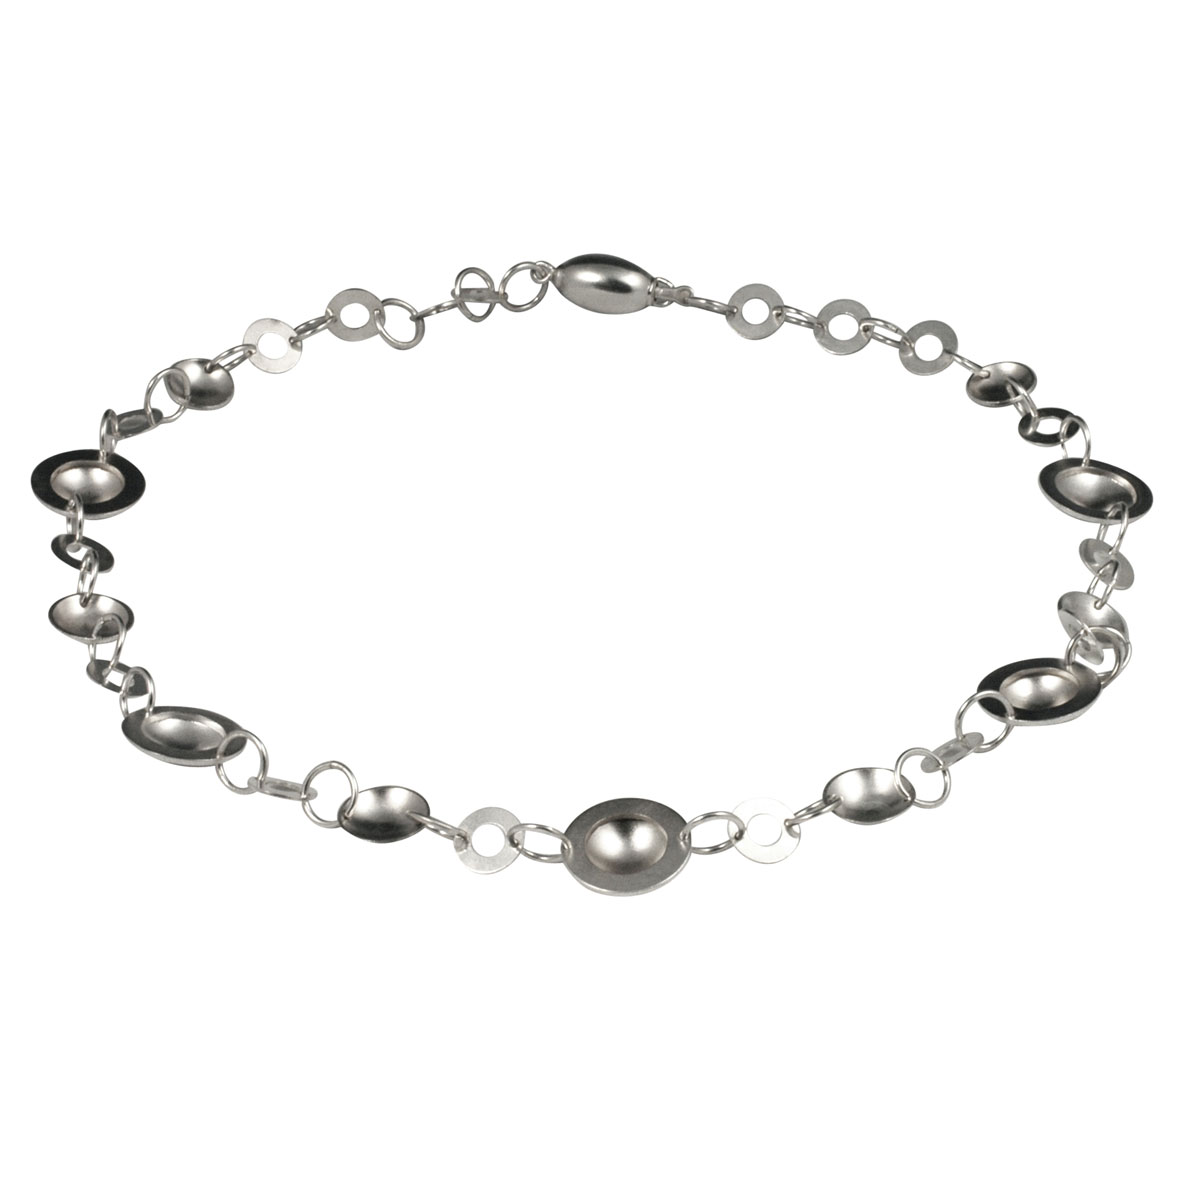 Silver orbital necklace